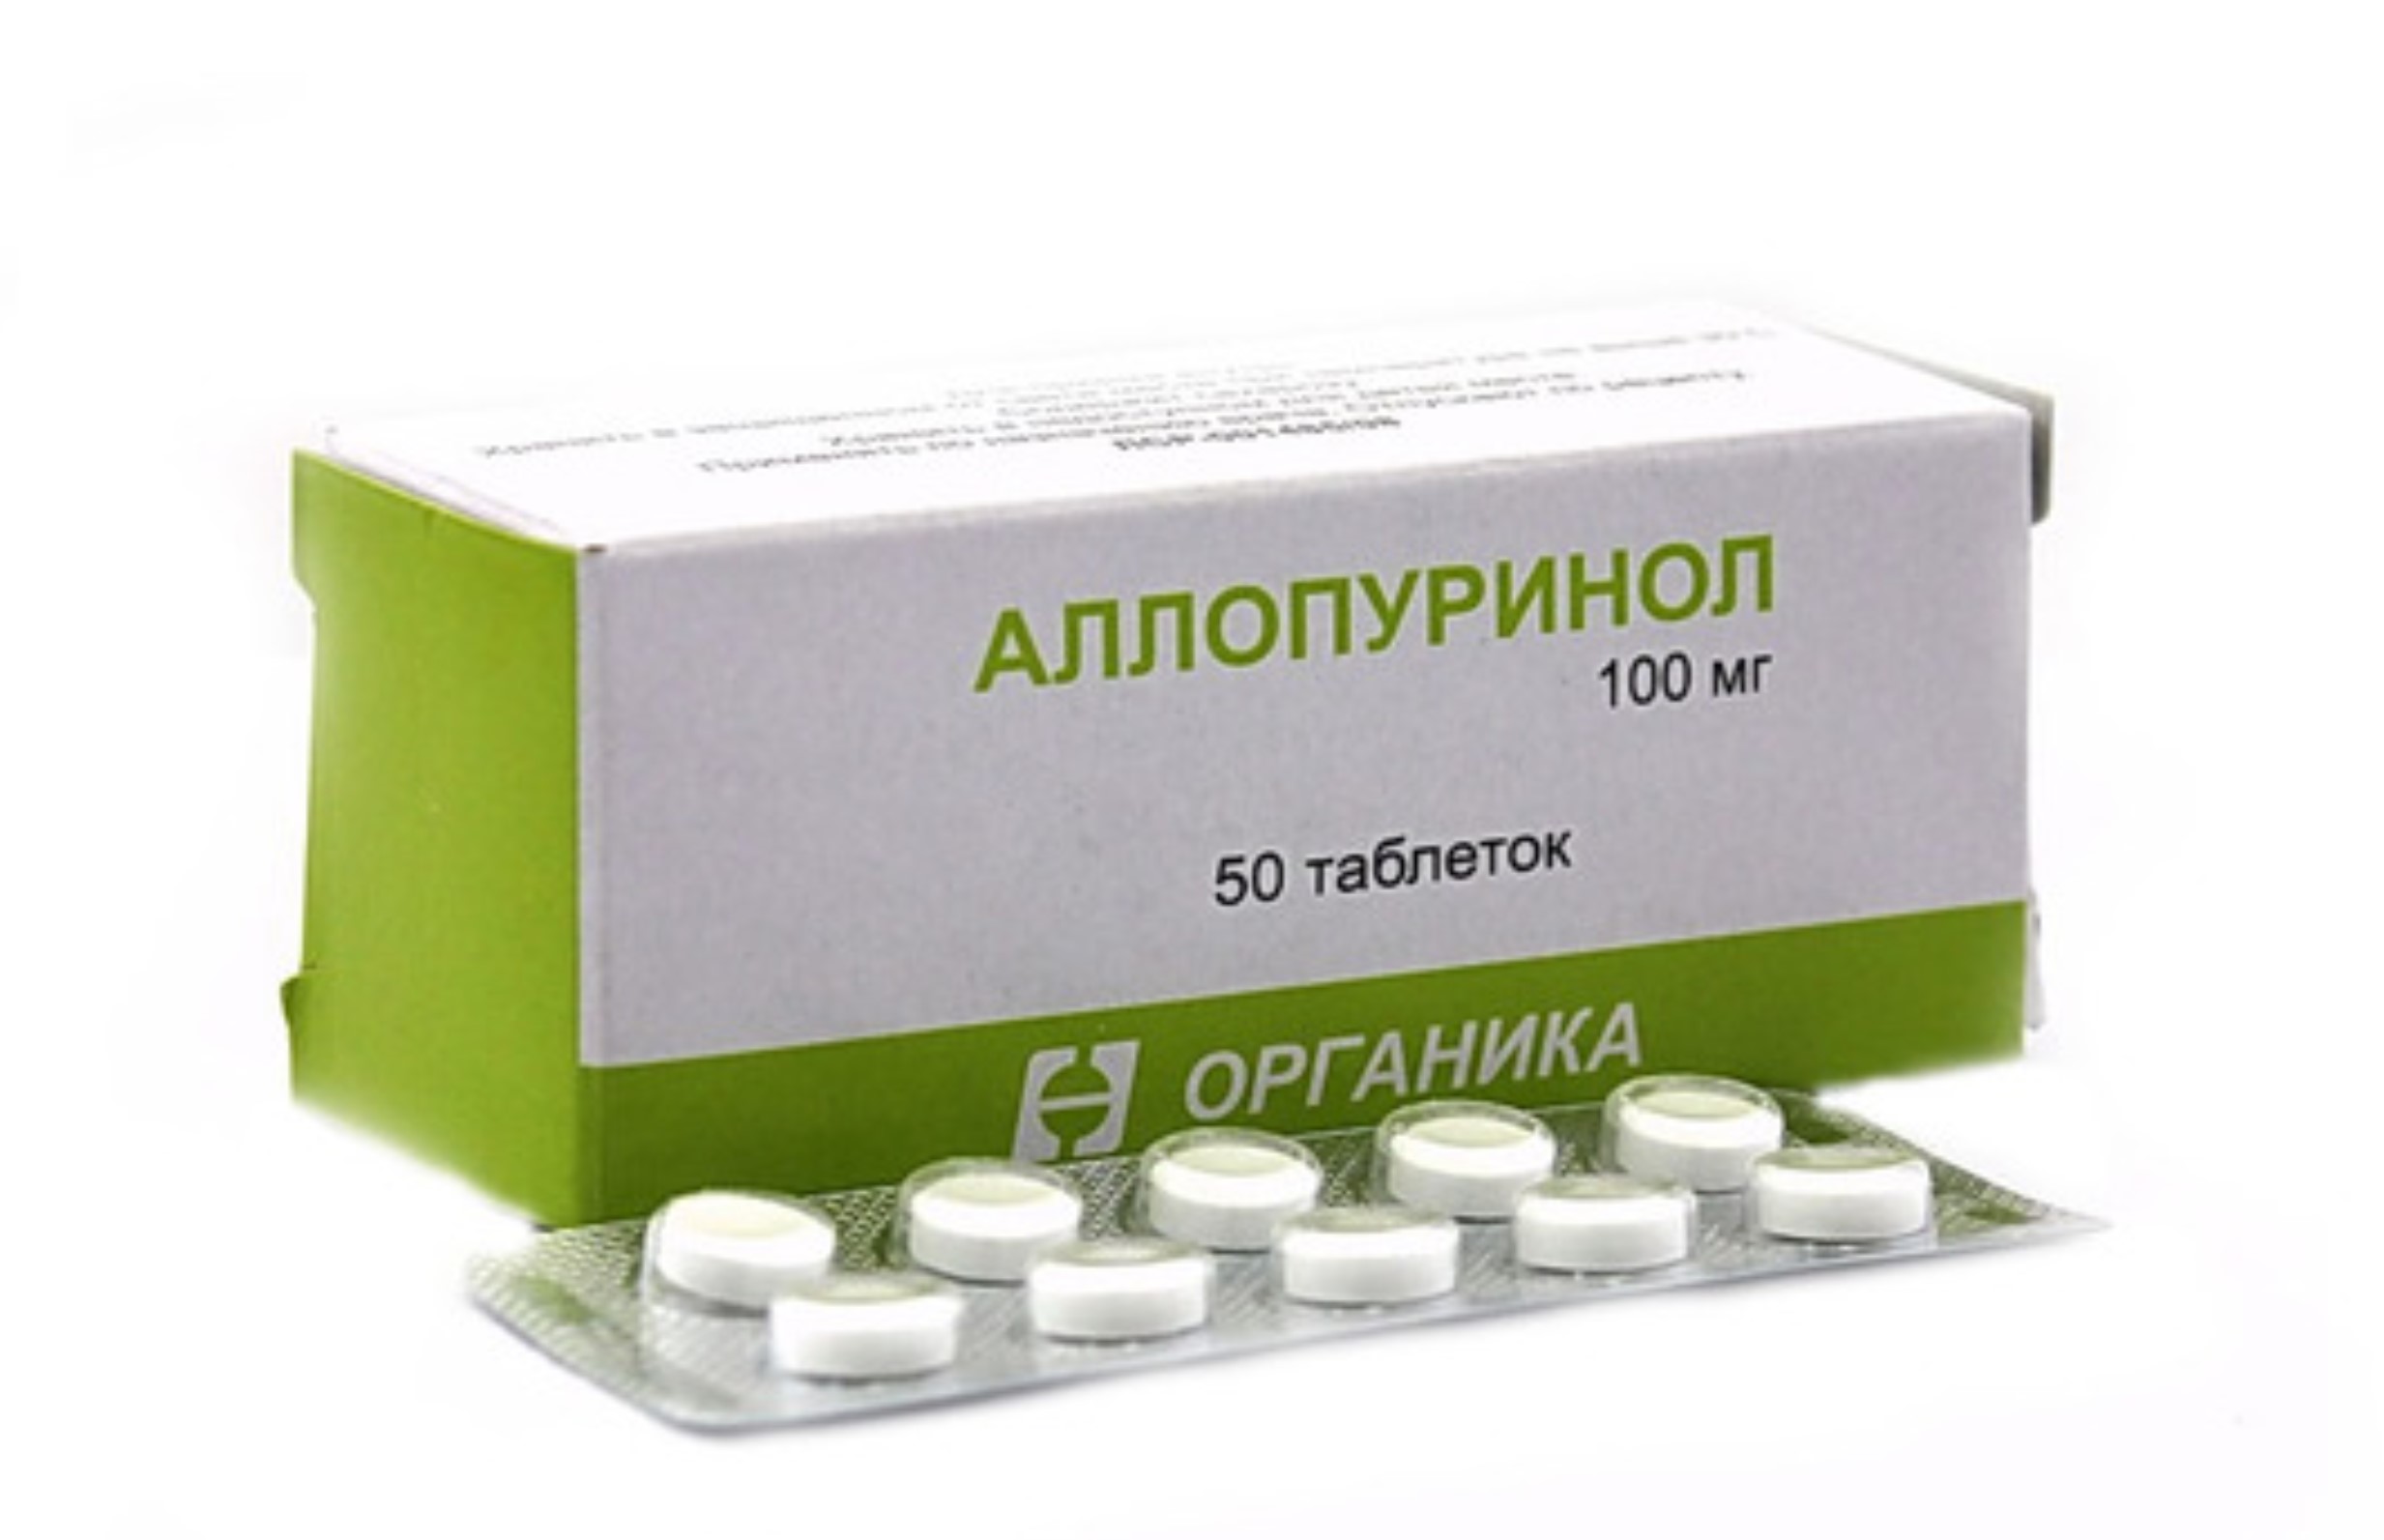 Аллопуринол 100 отзывы аналоги таблетки. Аллопуринол 300 мг. Аллопуринол 50мг. Аллопуринол 100 мг. Аллопуринол 80 мг.